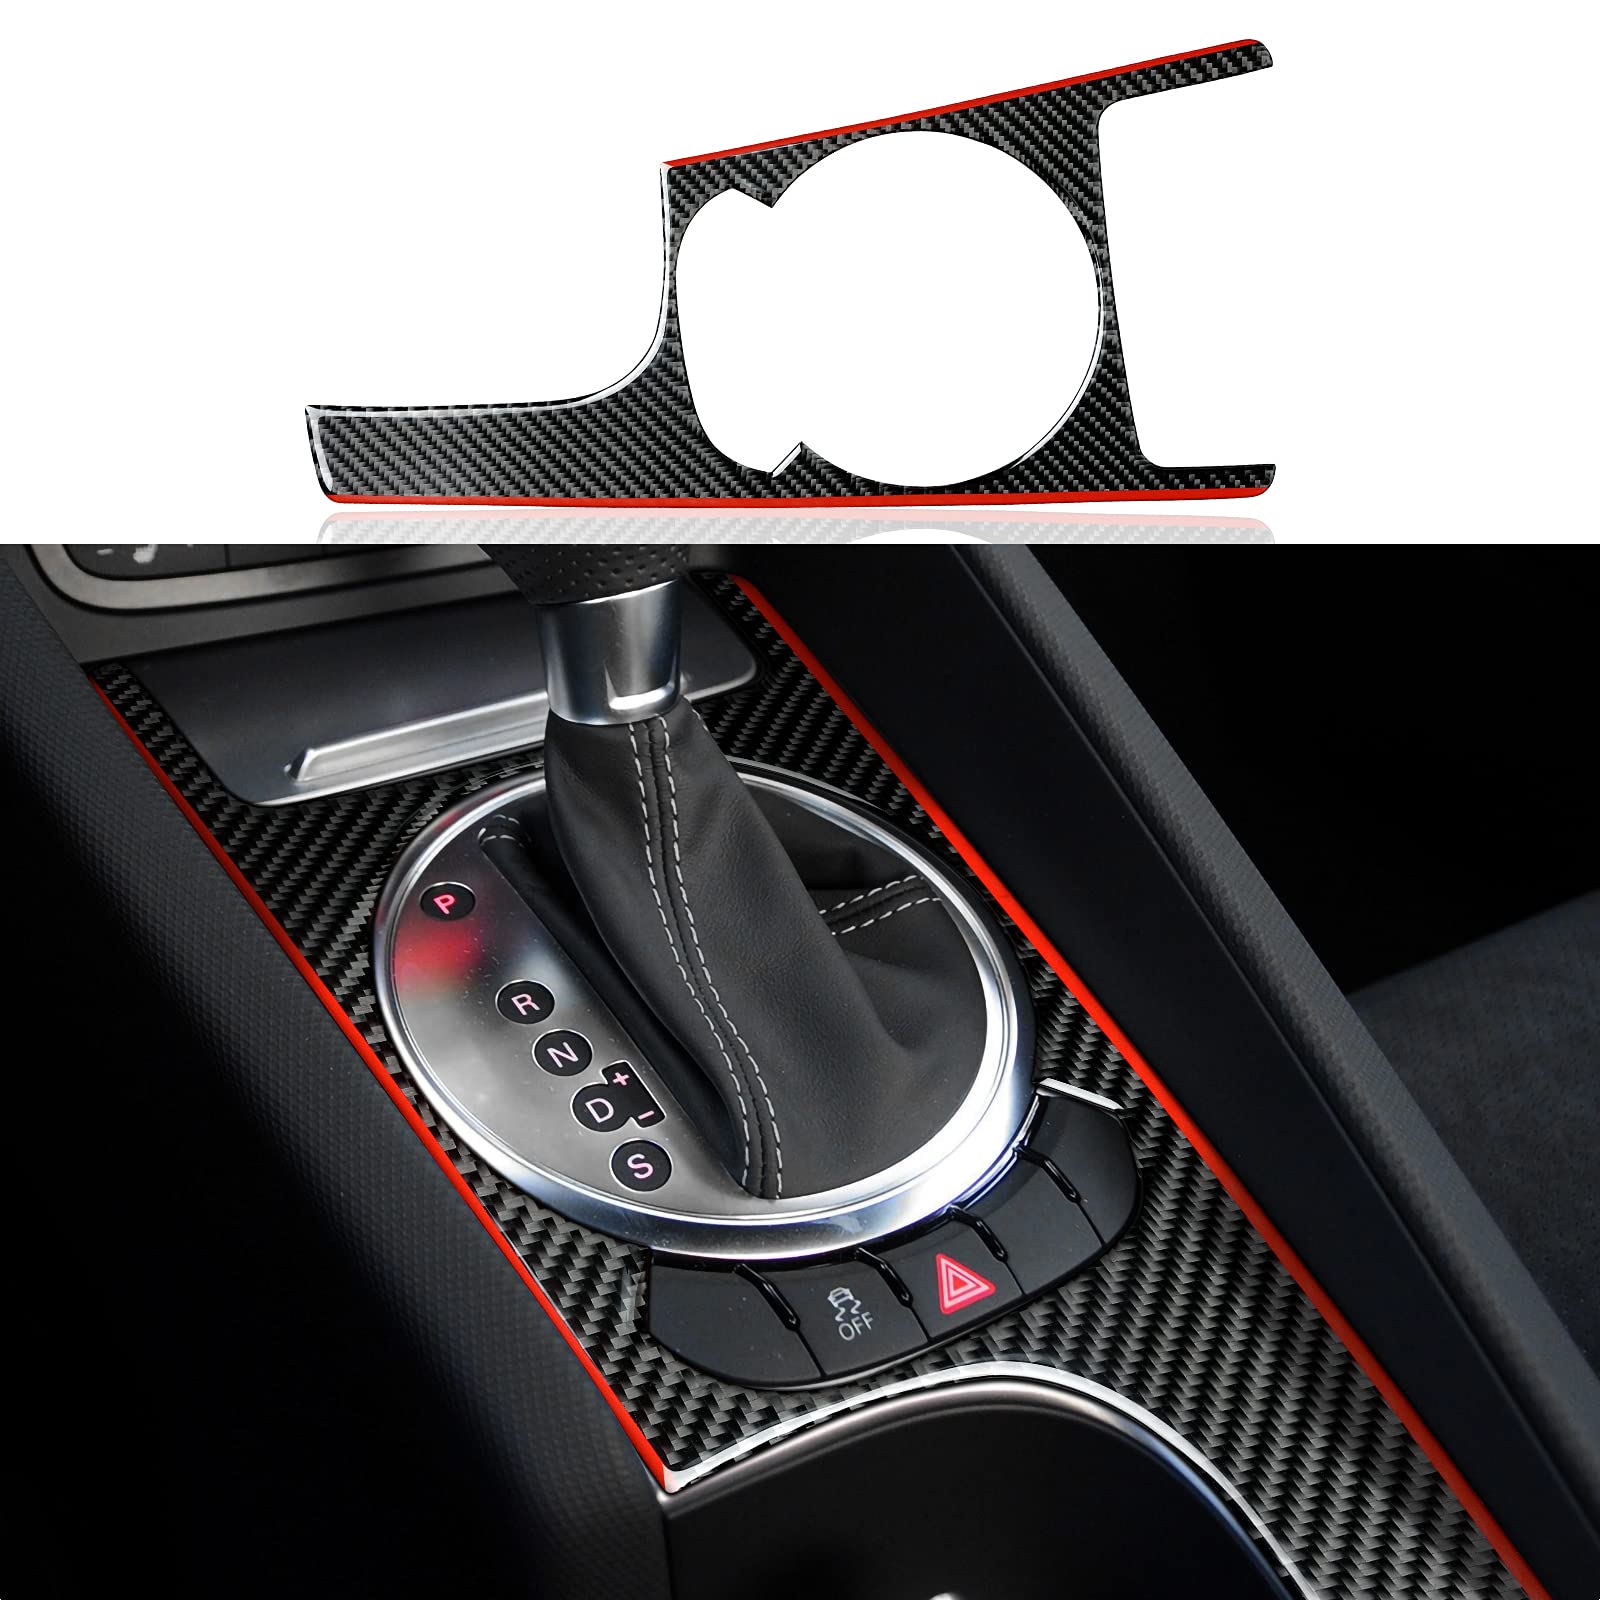 OYDDL Schalttafelverkleidung Aufkleber Gear Shifter Rahmen Kohlefaser Sticker Abdeckung kompatibel mit Audi TT 8n 8j MK123 2008-2014 Accessories (S, Stil B) von OYDDL